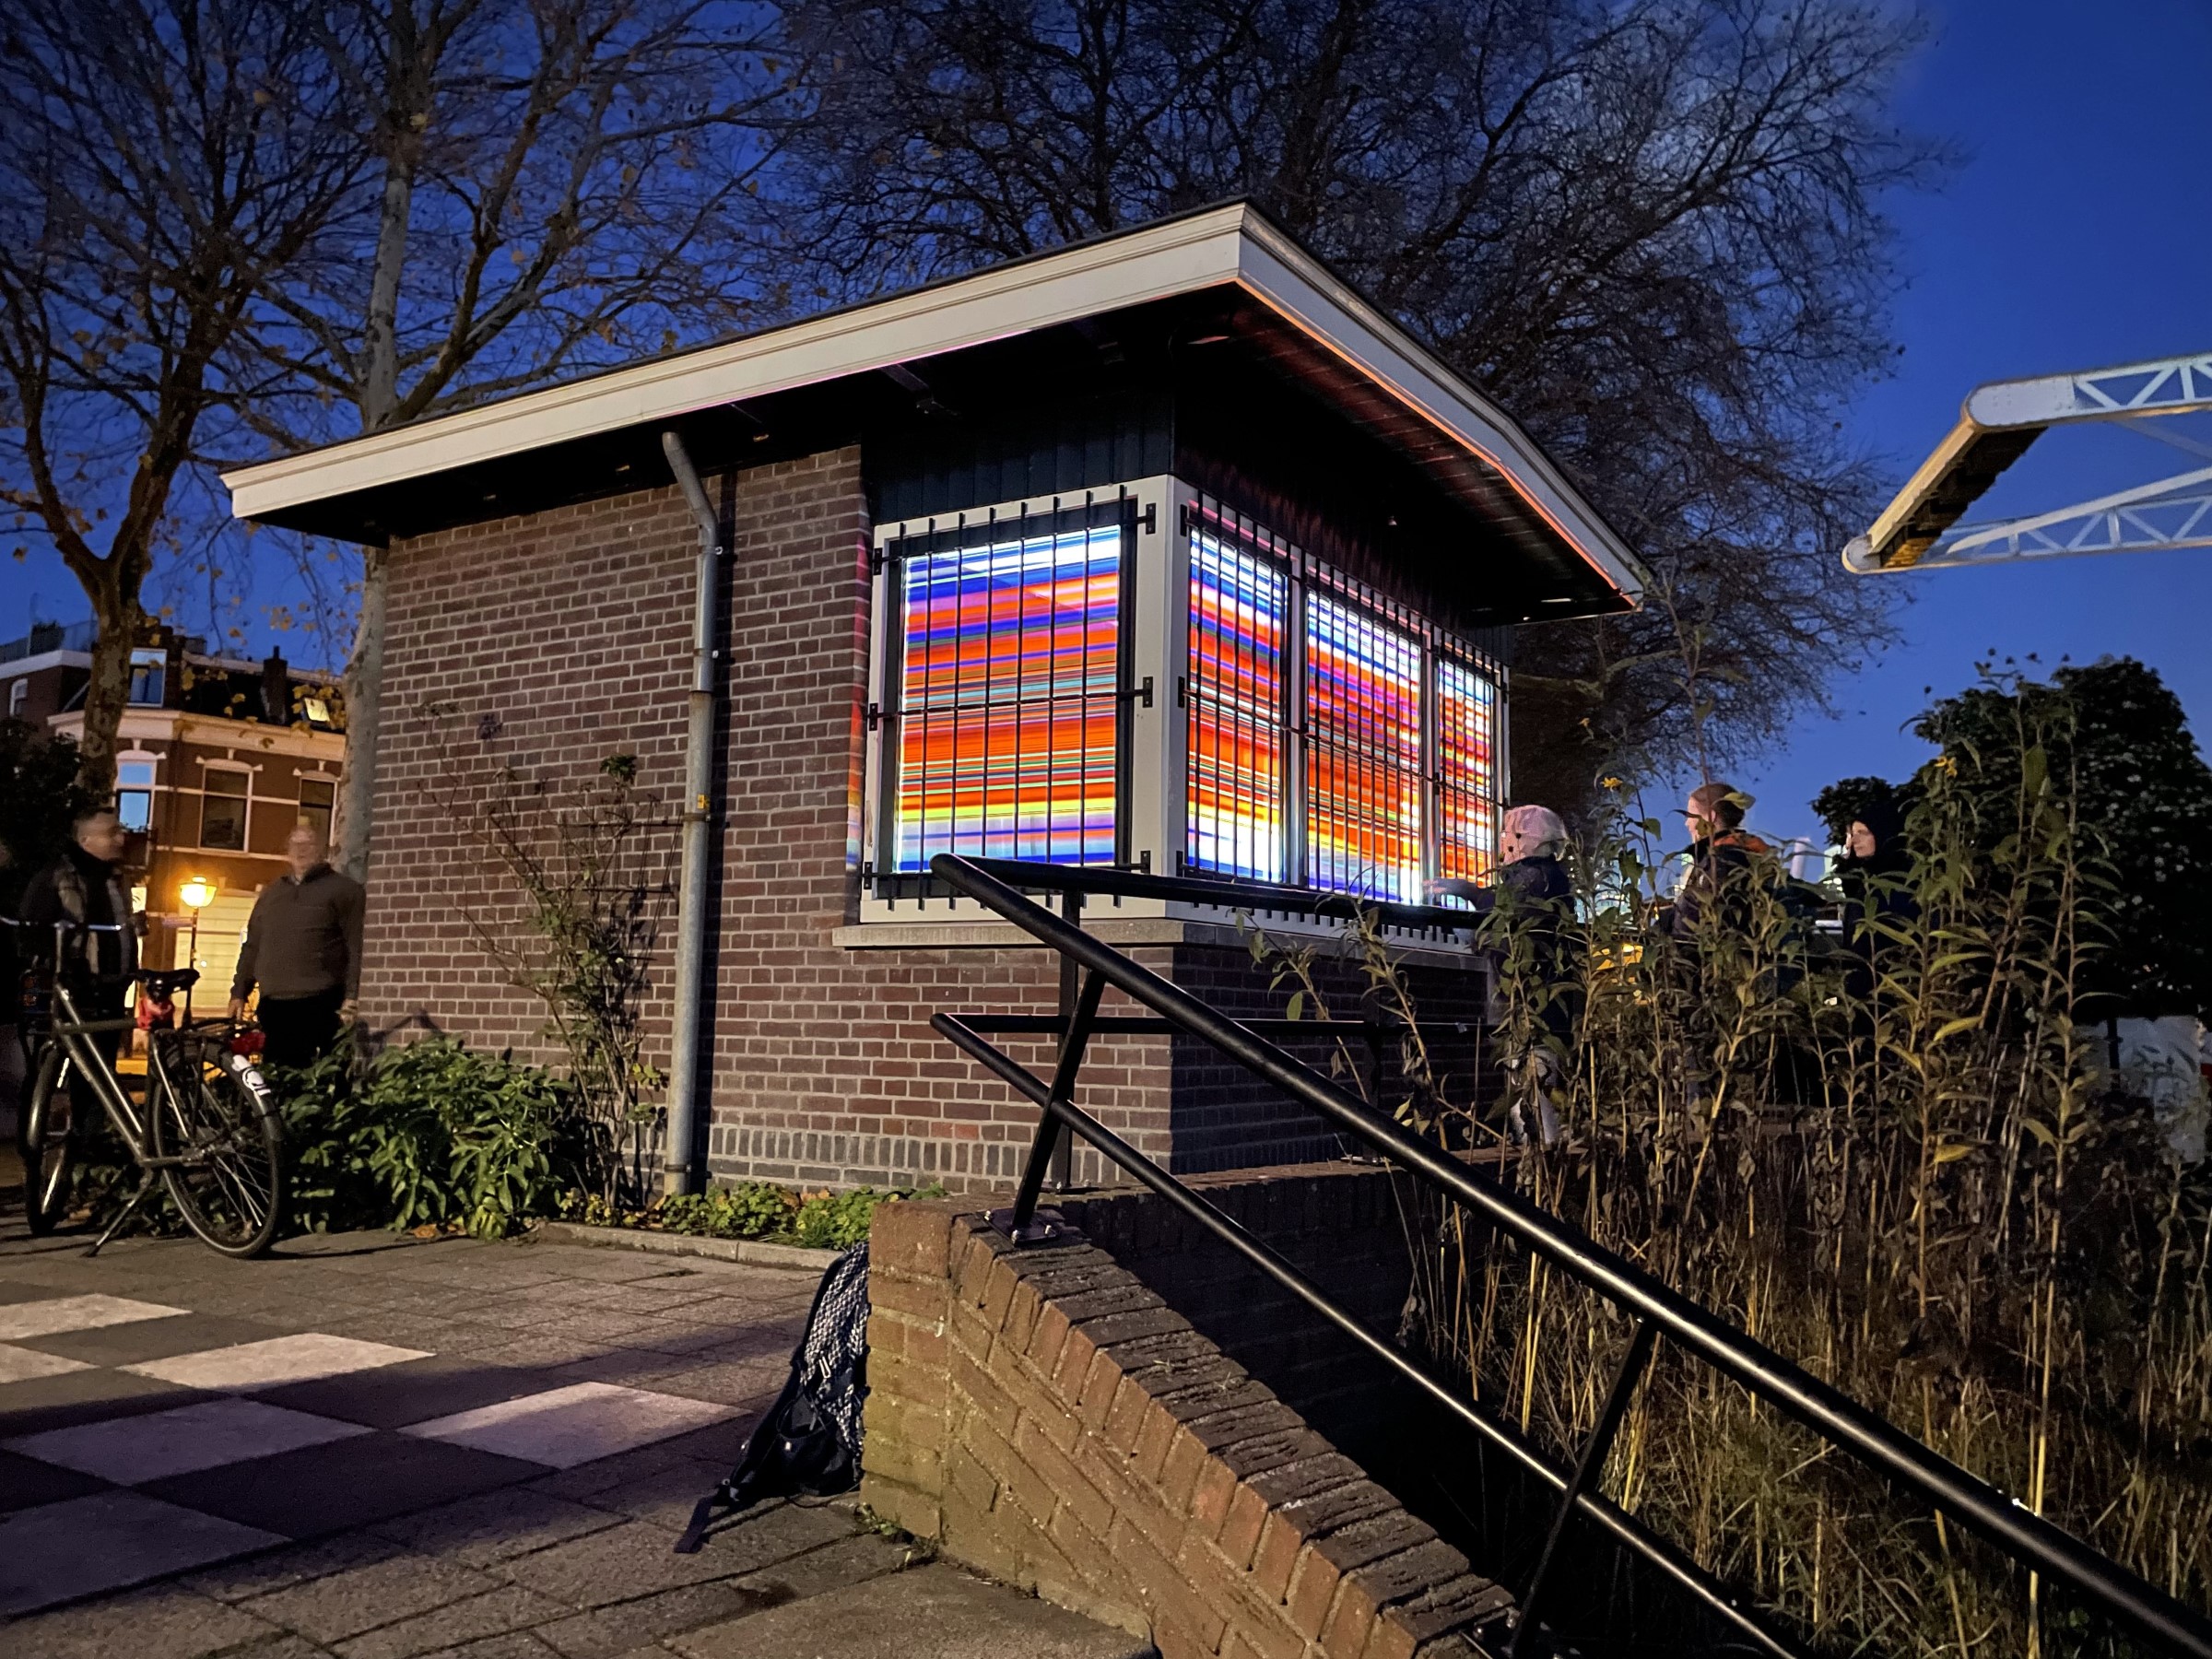 Brugwachtershuisje Utrecht verlicht met gekleurde transparante plakfolie als een lampion.